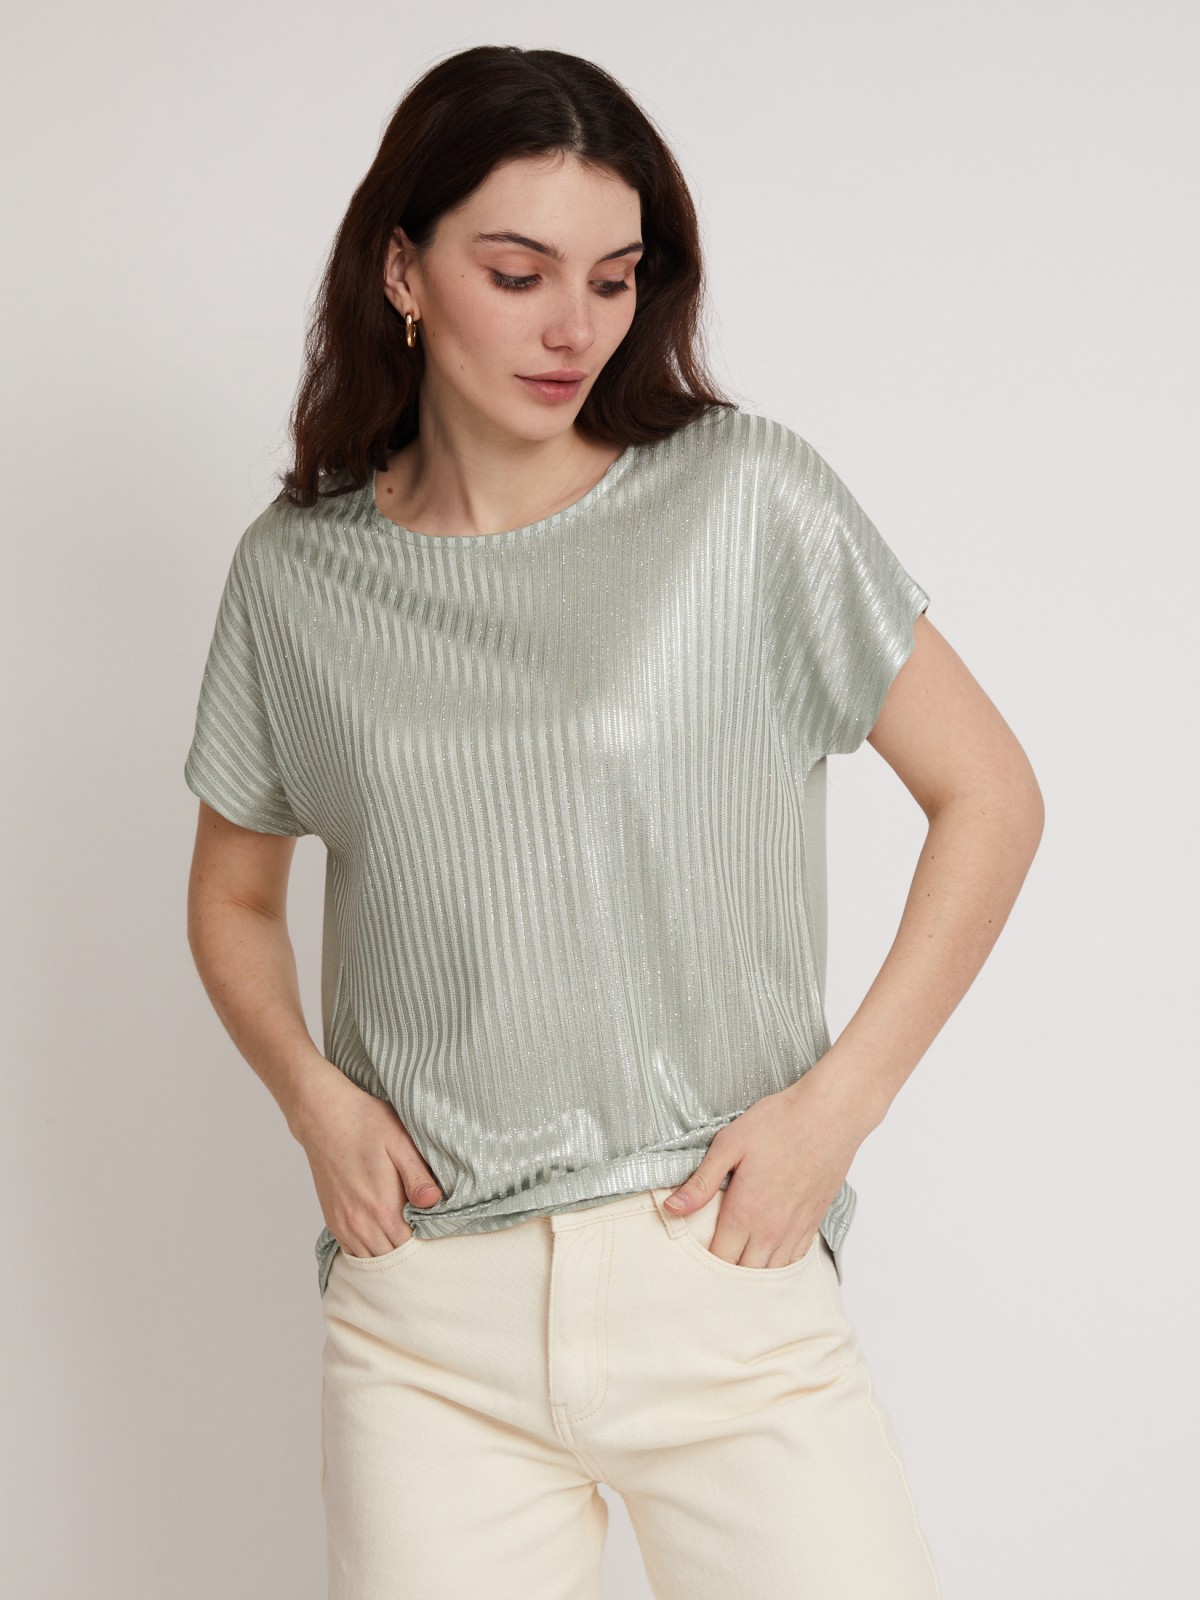 Топ-блузка с блеском zolla 023233226013, цвет светло-зеленый, размер XS - фото 3